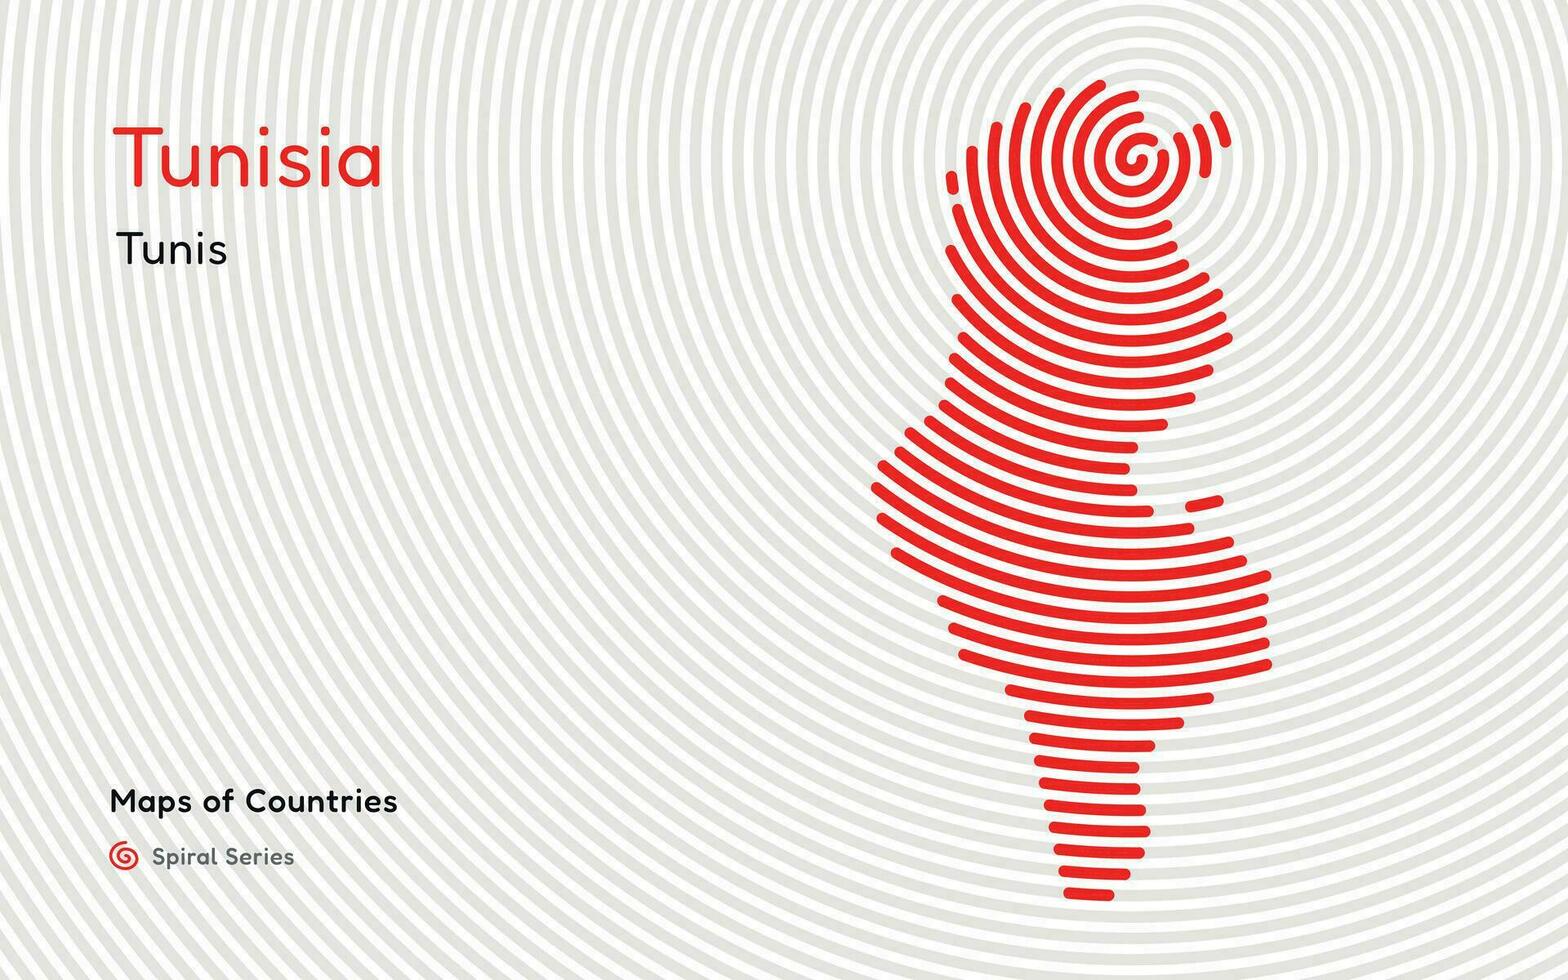 kreativ Karte von Tunesien, politisch Karte. tunis Hauptstadt. Welt Länder Vektor Karten Serie. Spiral, Fingerabdruck Serie